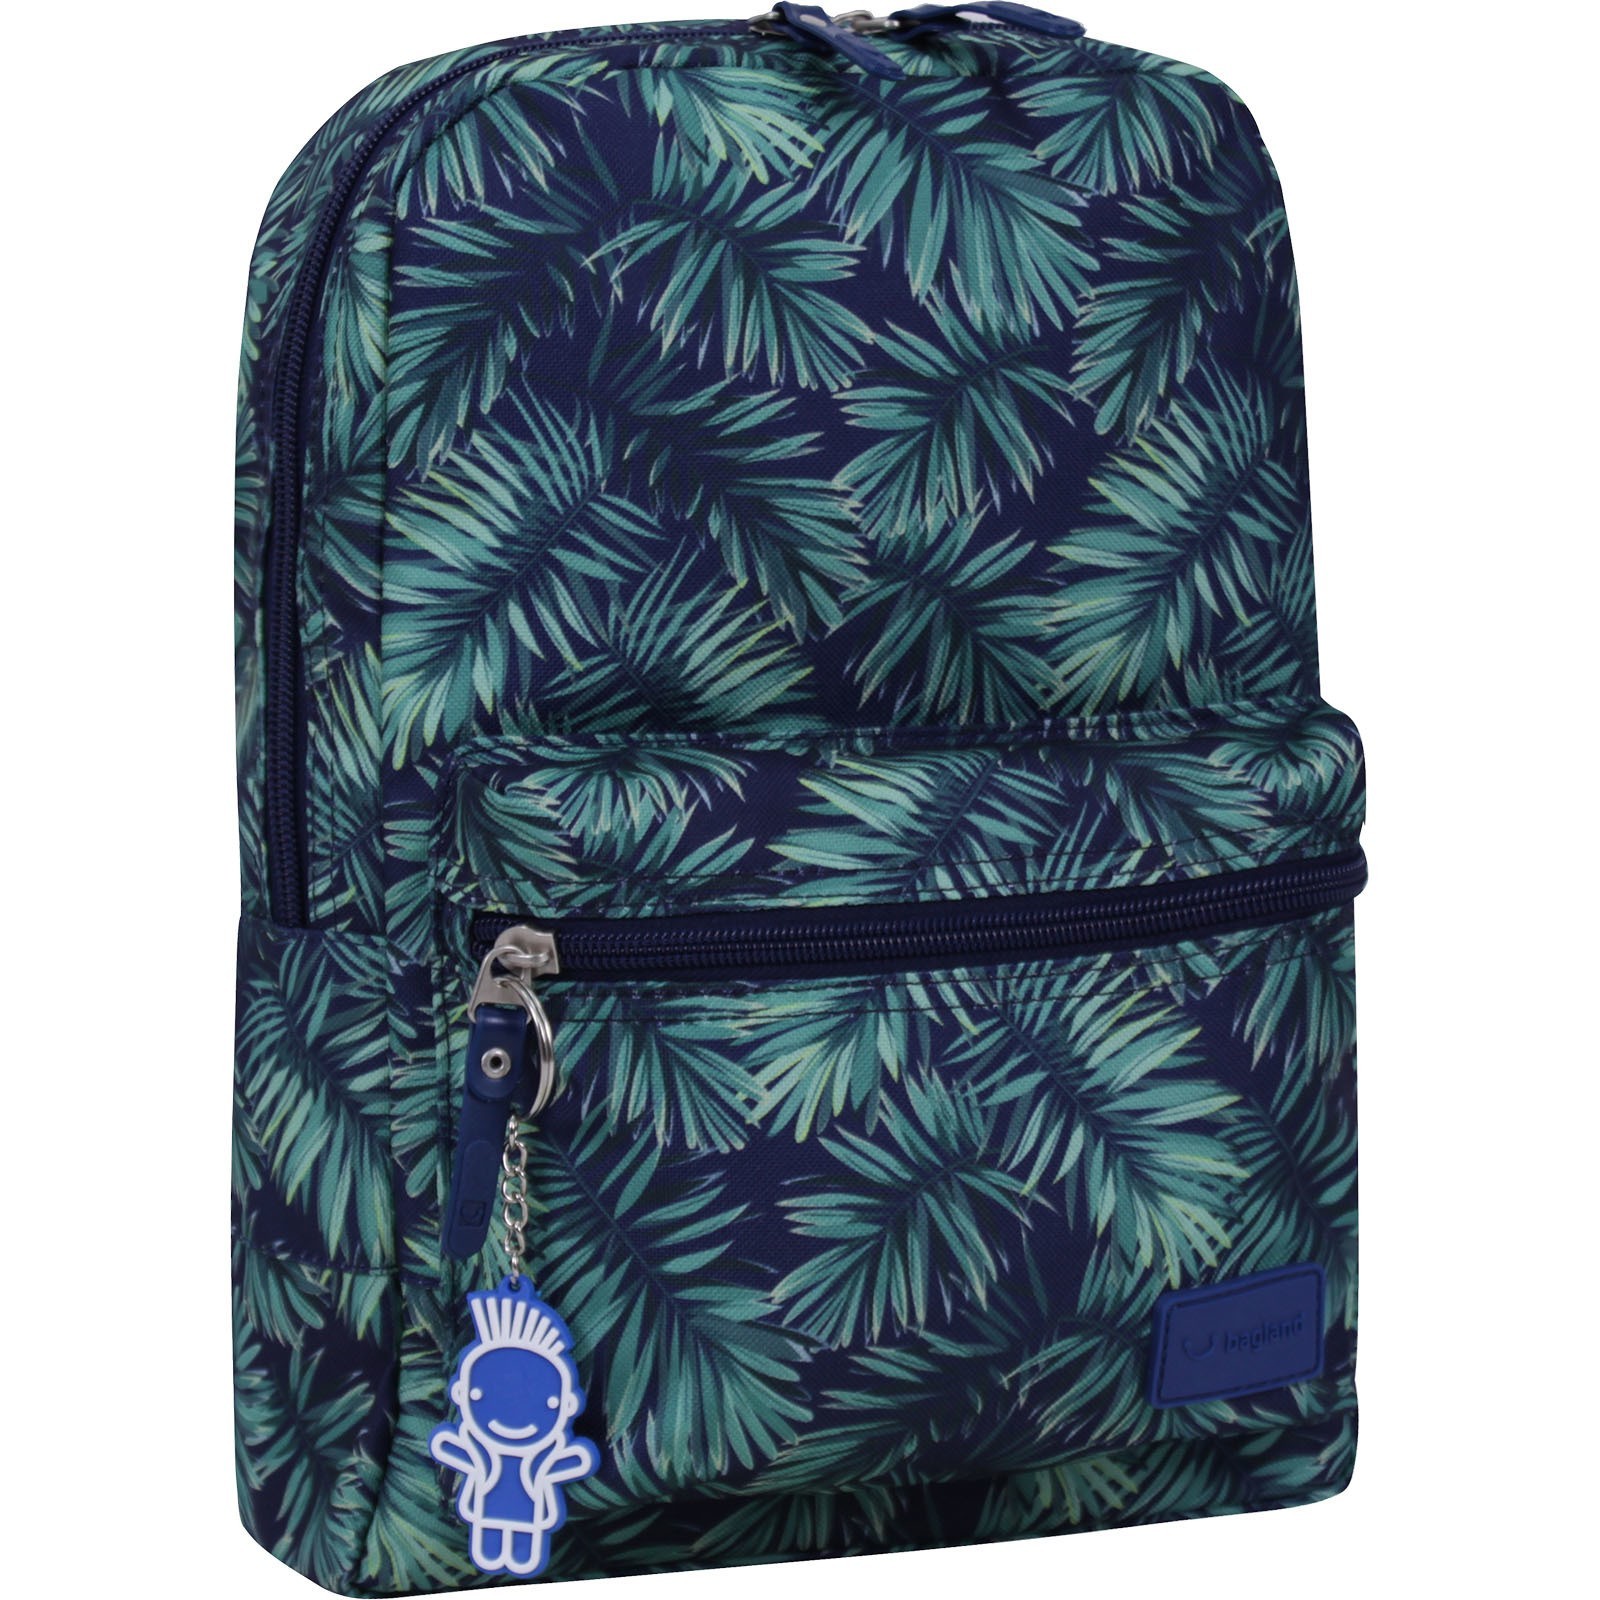 

Рюкзак молодежный с мягкой спинкой ранец для мальчика и девочки Mini 8 л. 32 x 23 x 10 см Разноцветный BL 456 (00508664)